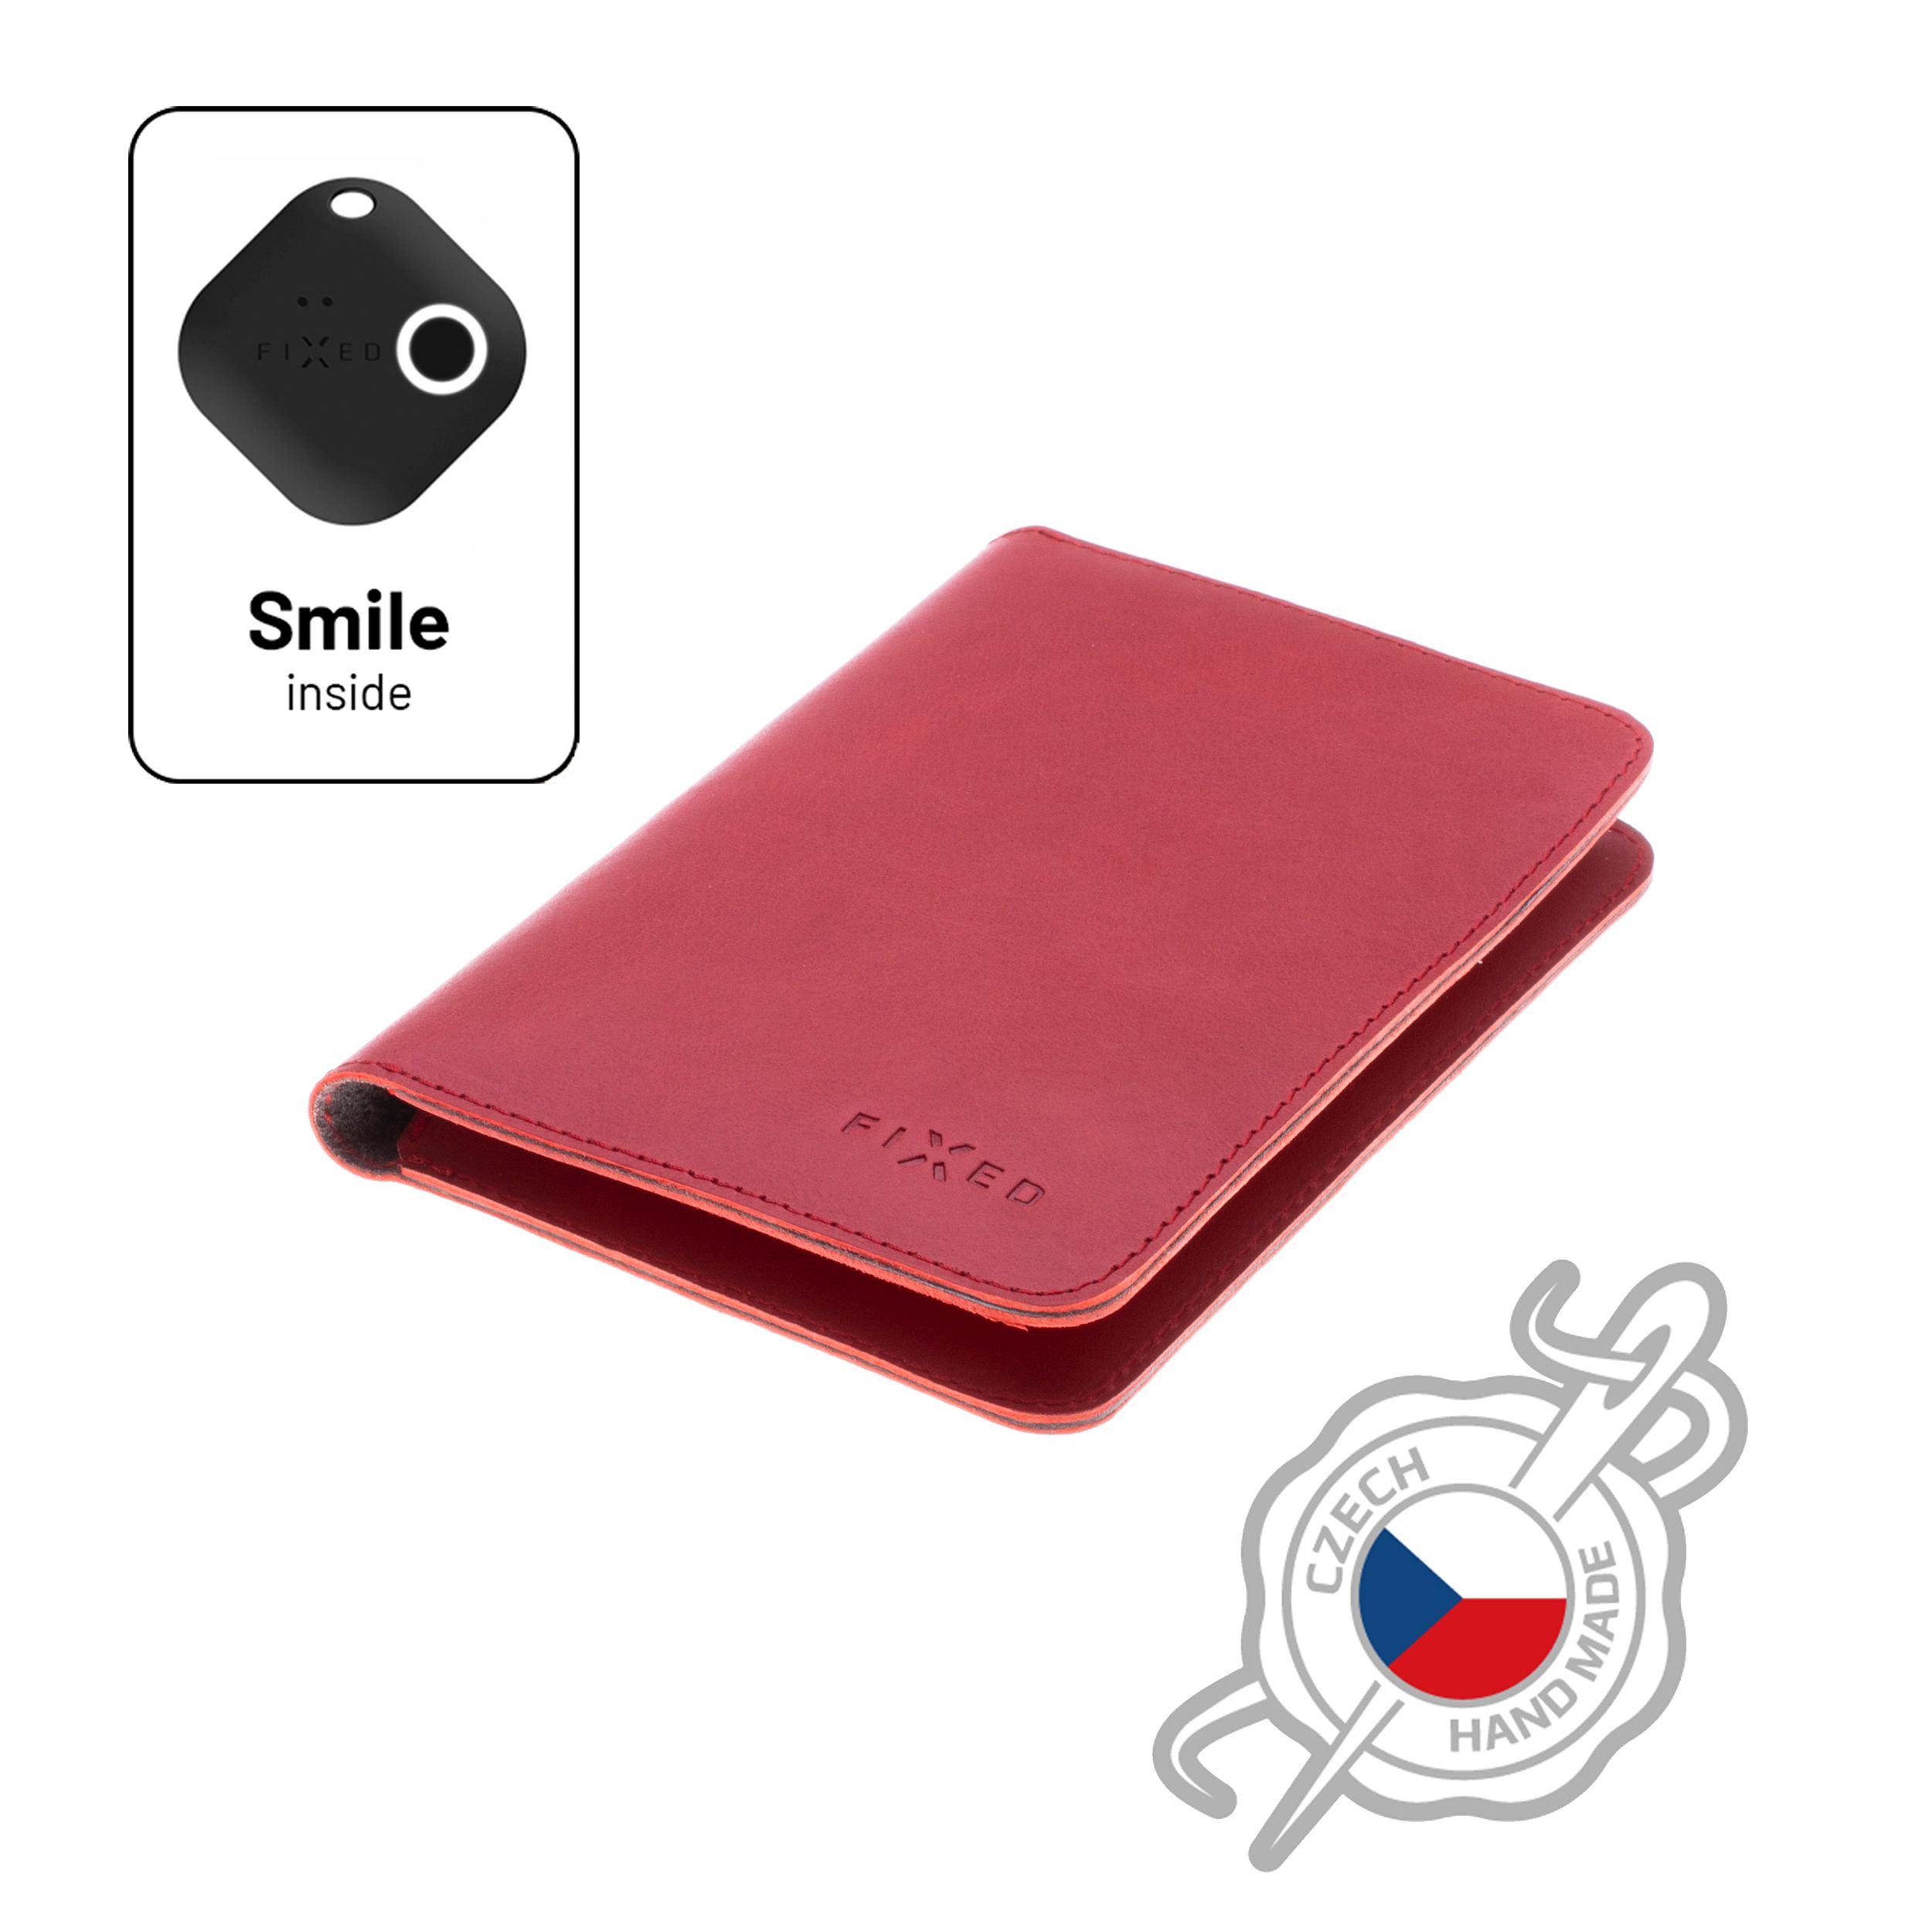 Kožená peněženka Smile Passport se smart trackerem Smile PRO, velikost cestovního pasu, červená